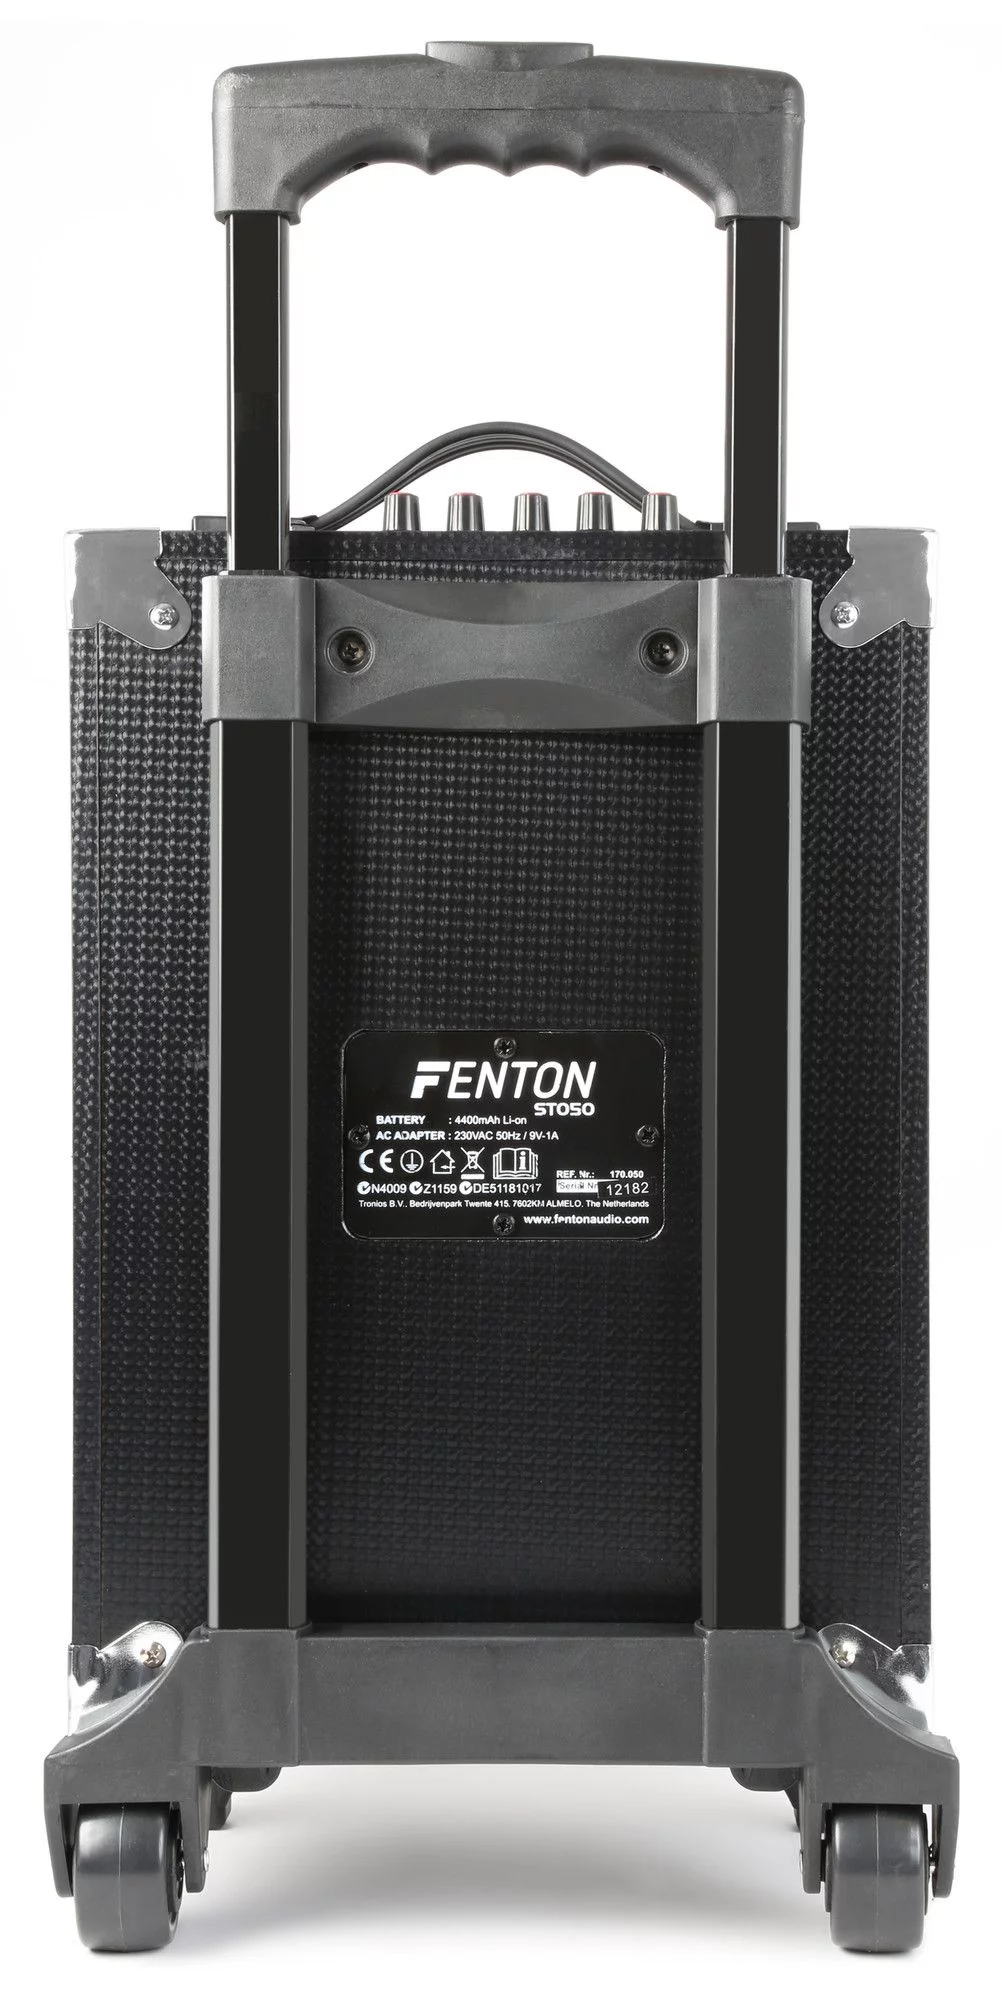 Fenton st050 mobiele geluidsinstallatie met bluetooth en draadloze vhf 5